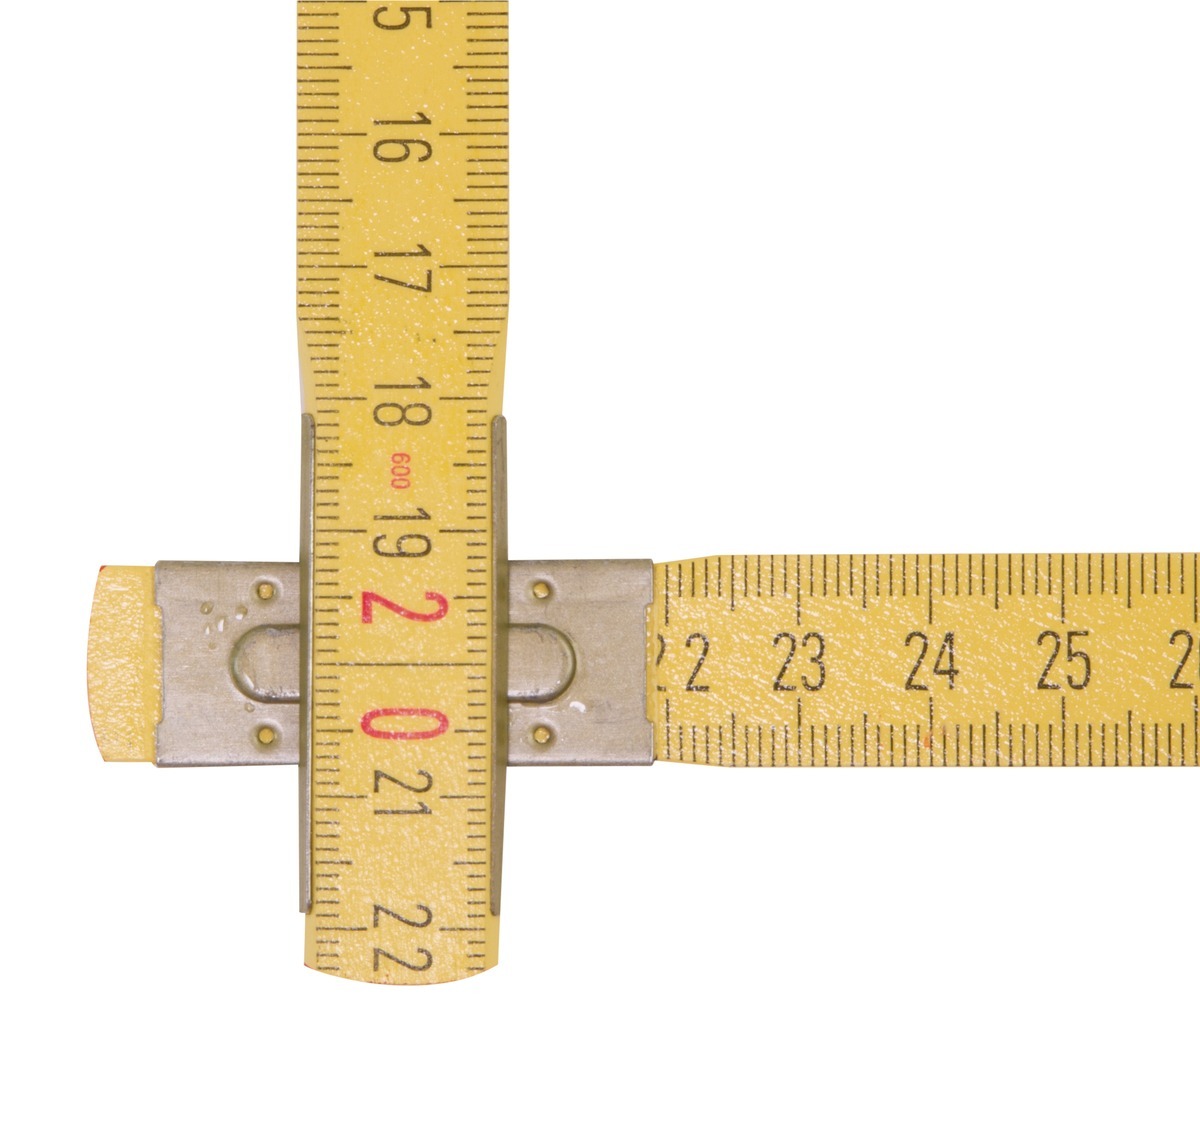 Mètre pliant en bois STABILA type 607, 2 m, jaune, graduations métriques, certifié PEFC - 01104